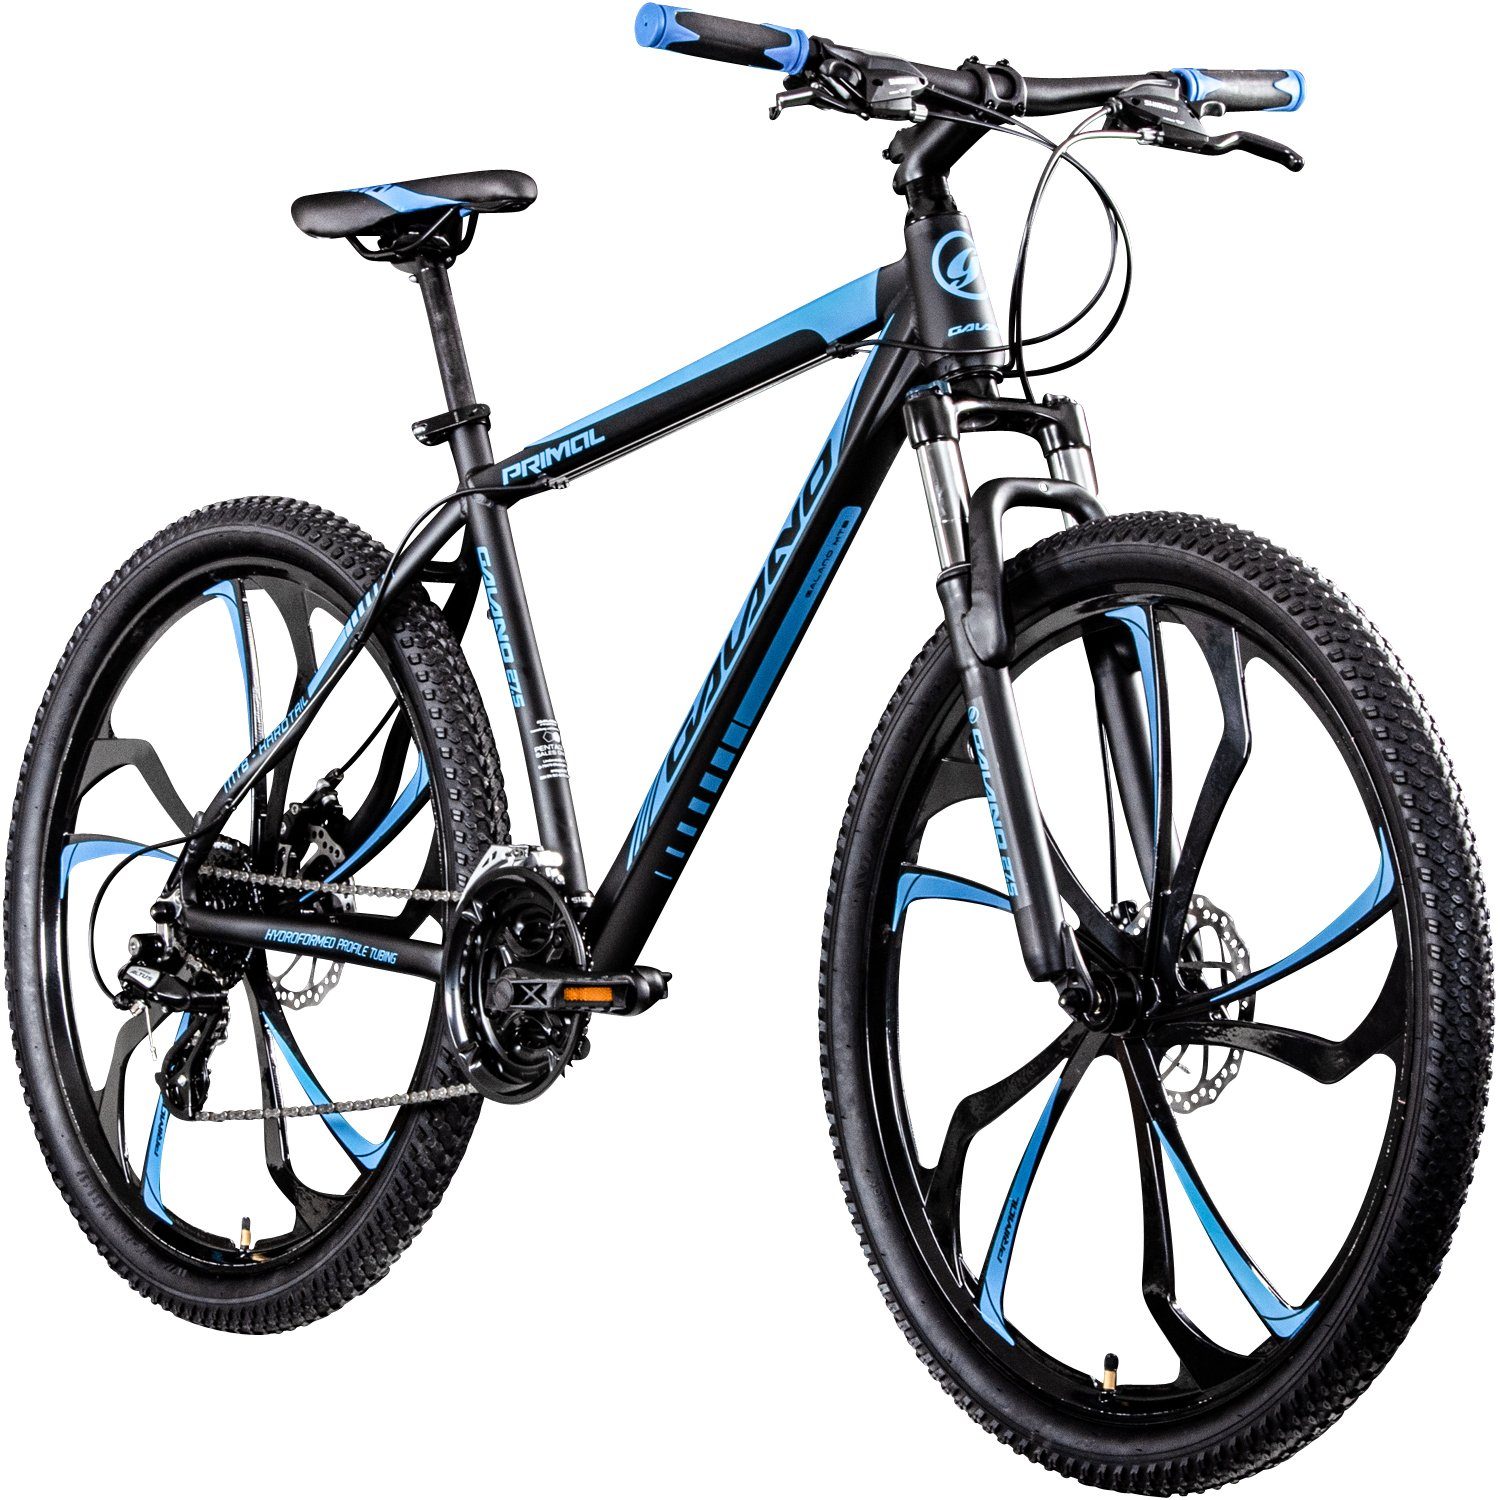 Galano Mountainbike Primal, 24 Gang, Kettenschaltung, Mountainbike Jugendliche und Erwachsene 165-185cm MTB Hardtail Fahrrad schwarz/blau | Mountainbikes